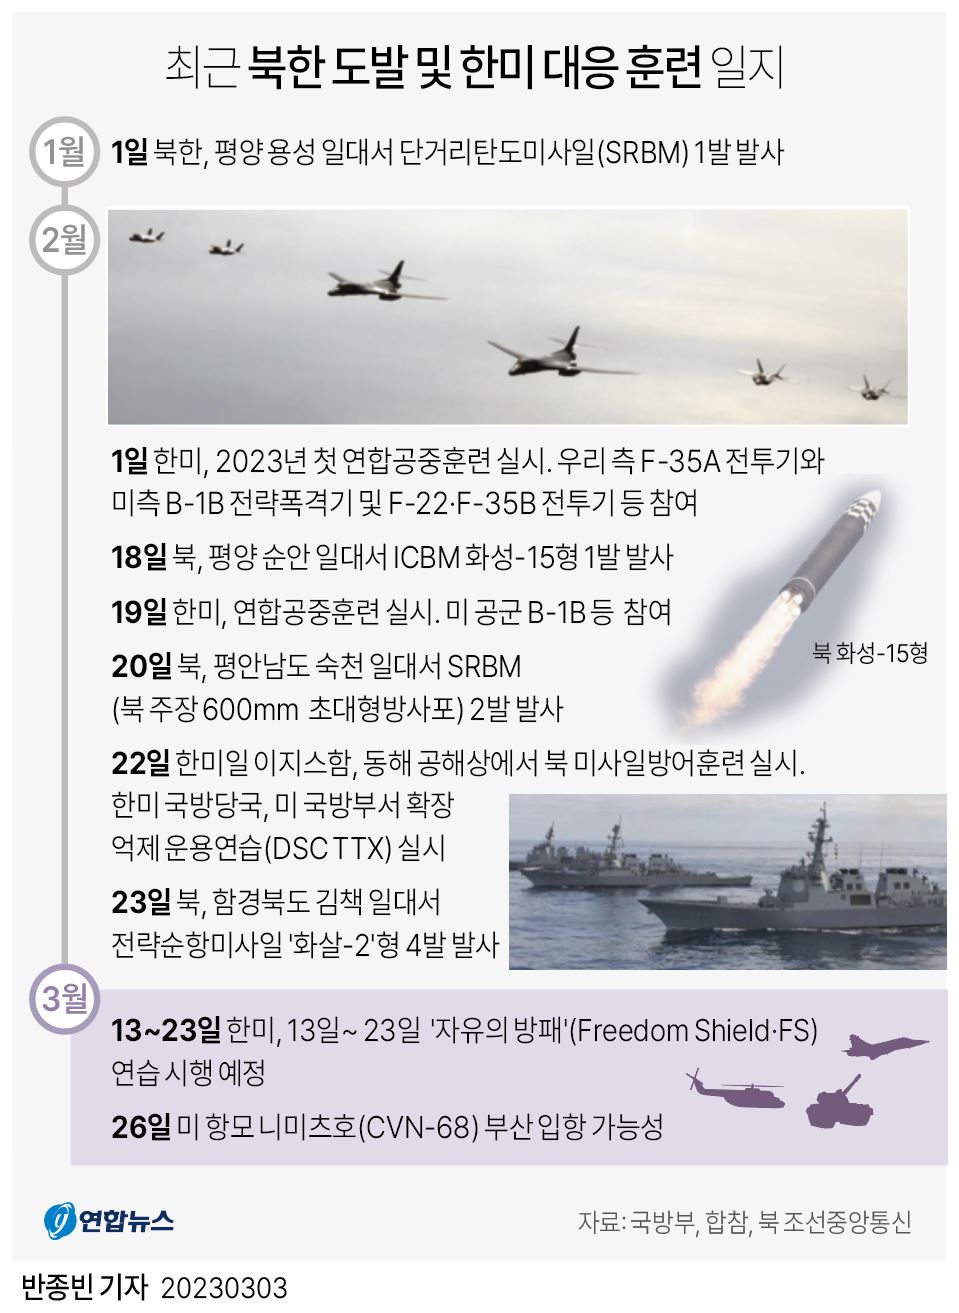 [그래픽] 최근 북한 도발 및 한미 대응 훈련 일지